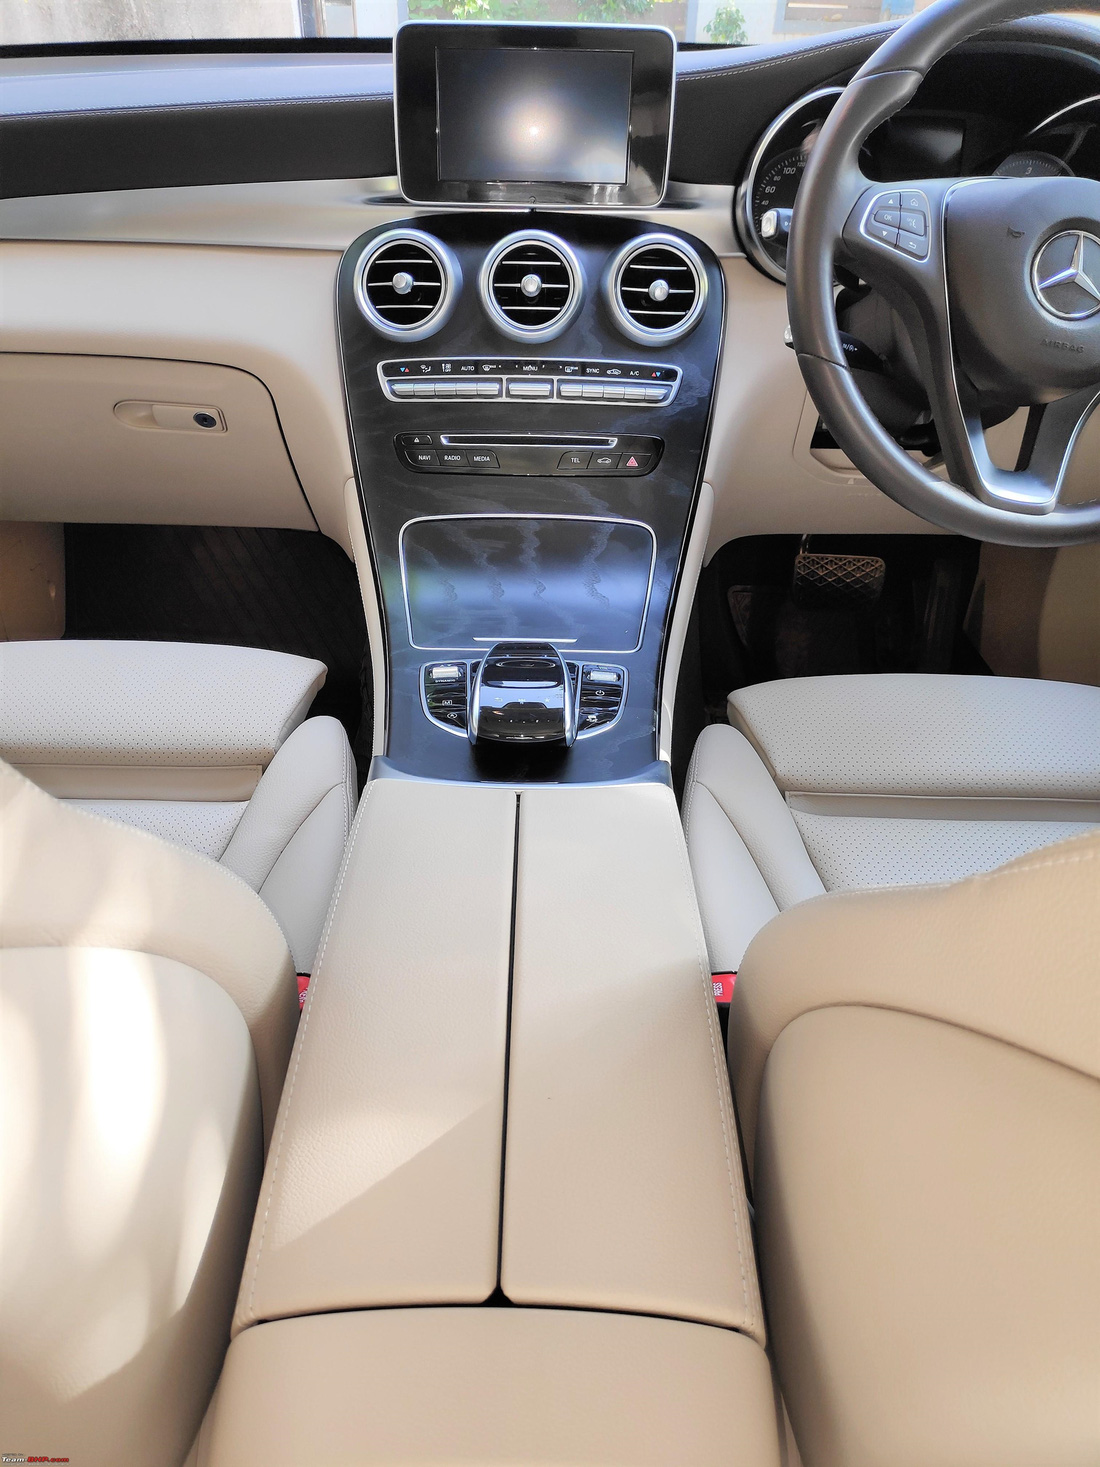 BMW ghế sau khó chịu, Audi, Volvo ‘đội giá’, chủ xe chốt ngay Mercedes-Benz GLC - Ảnh 6.